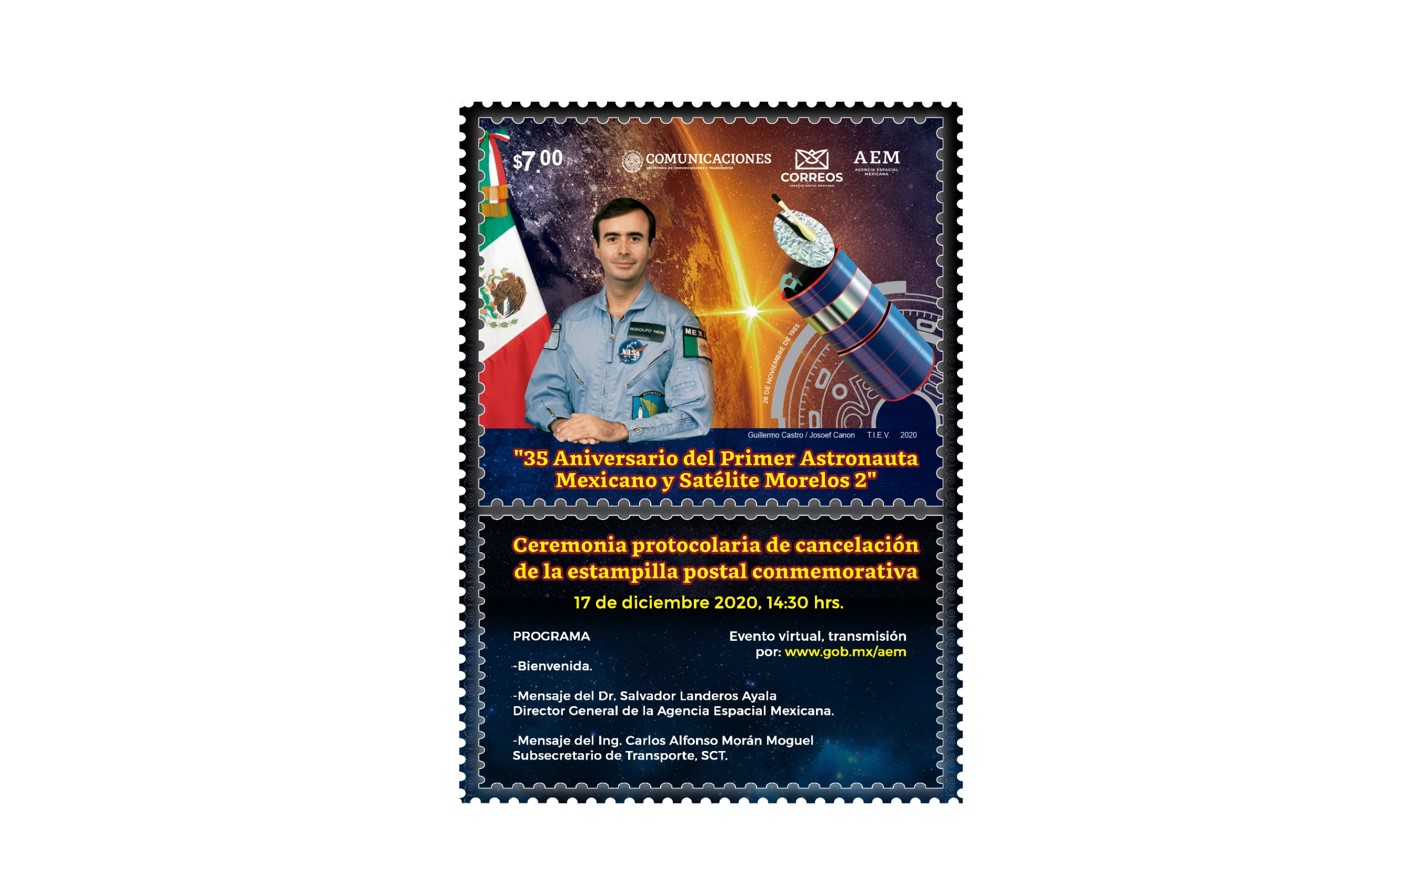  Cancelación Estampilla Postal "35 Aniversario del Primer Astronauta Mexicano y Satélite Morelos 2"